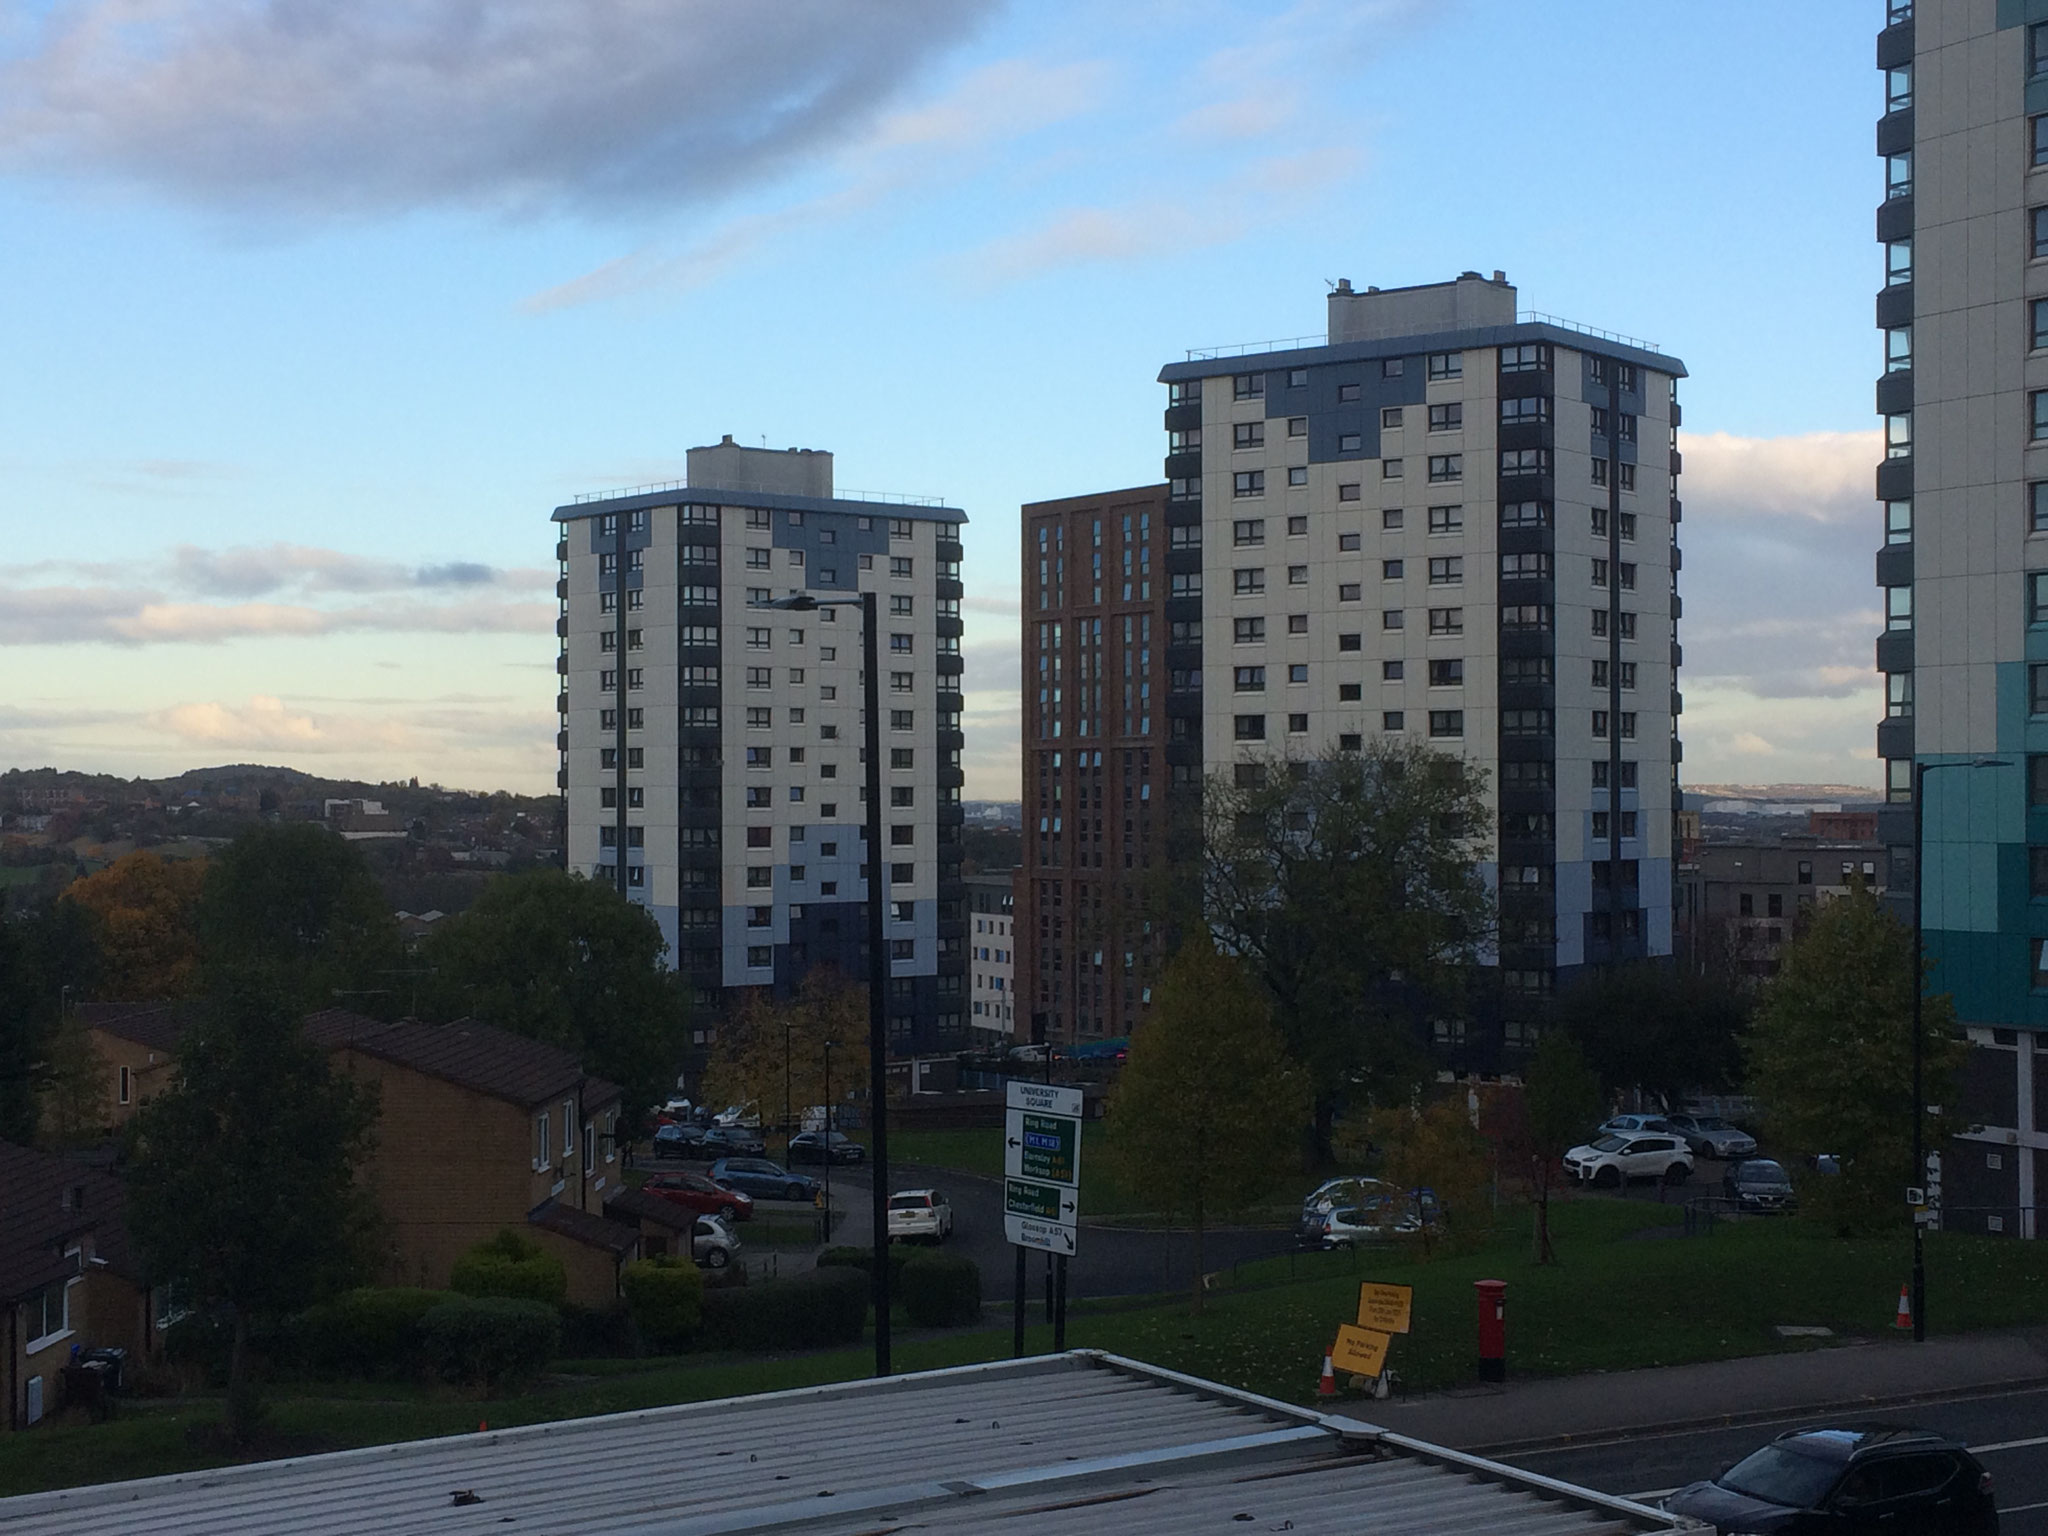 Blick vom Campus der Sheffield University auf Studierendenwohnheime